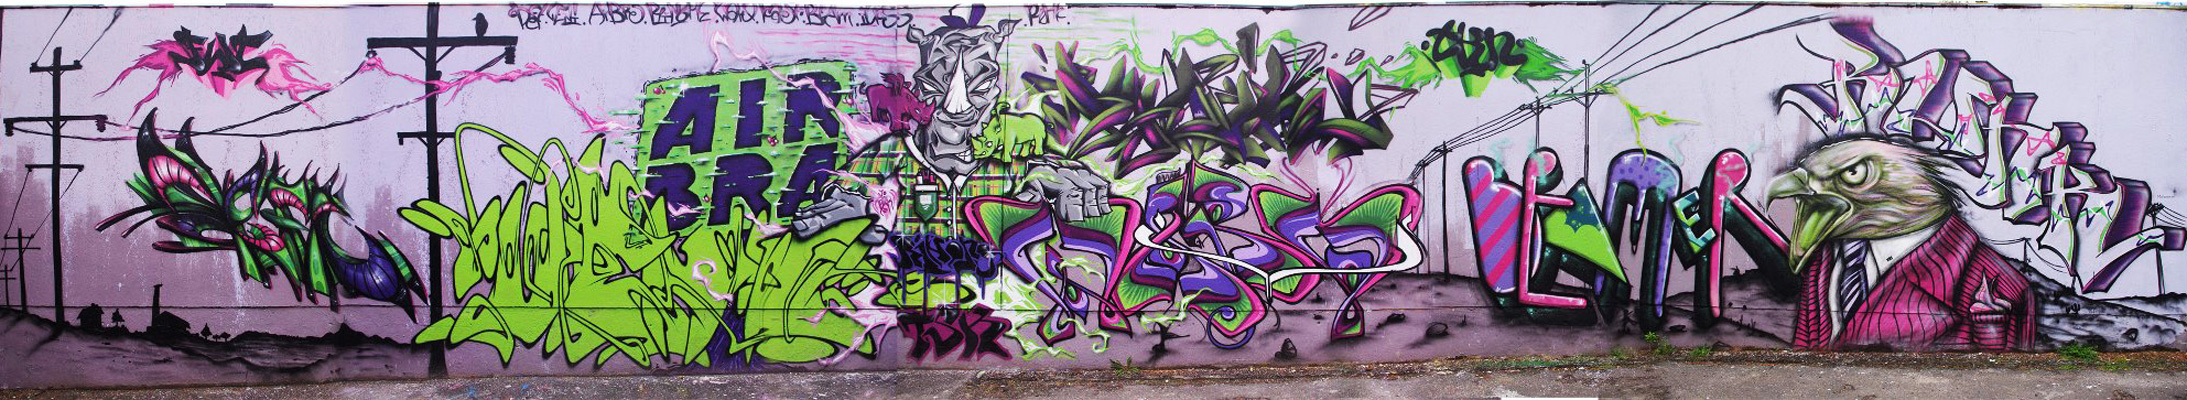 fresque_graffiti_riom_rino_deft_endtoend